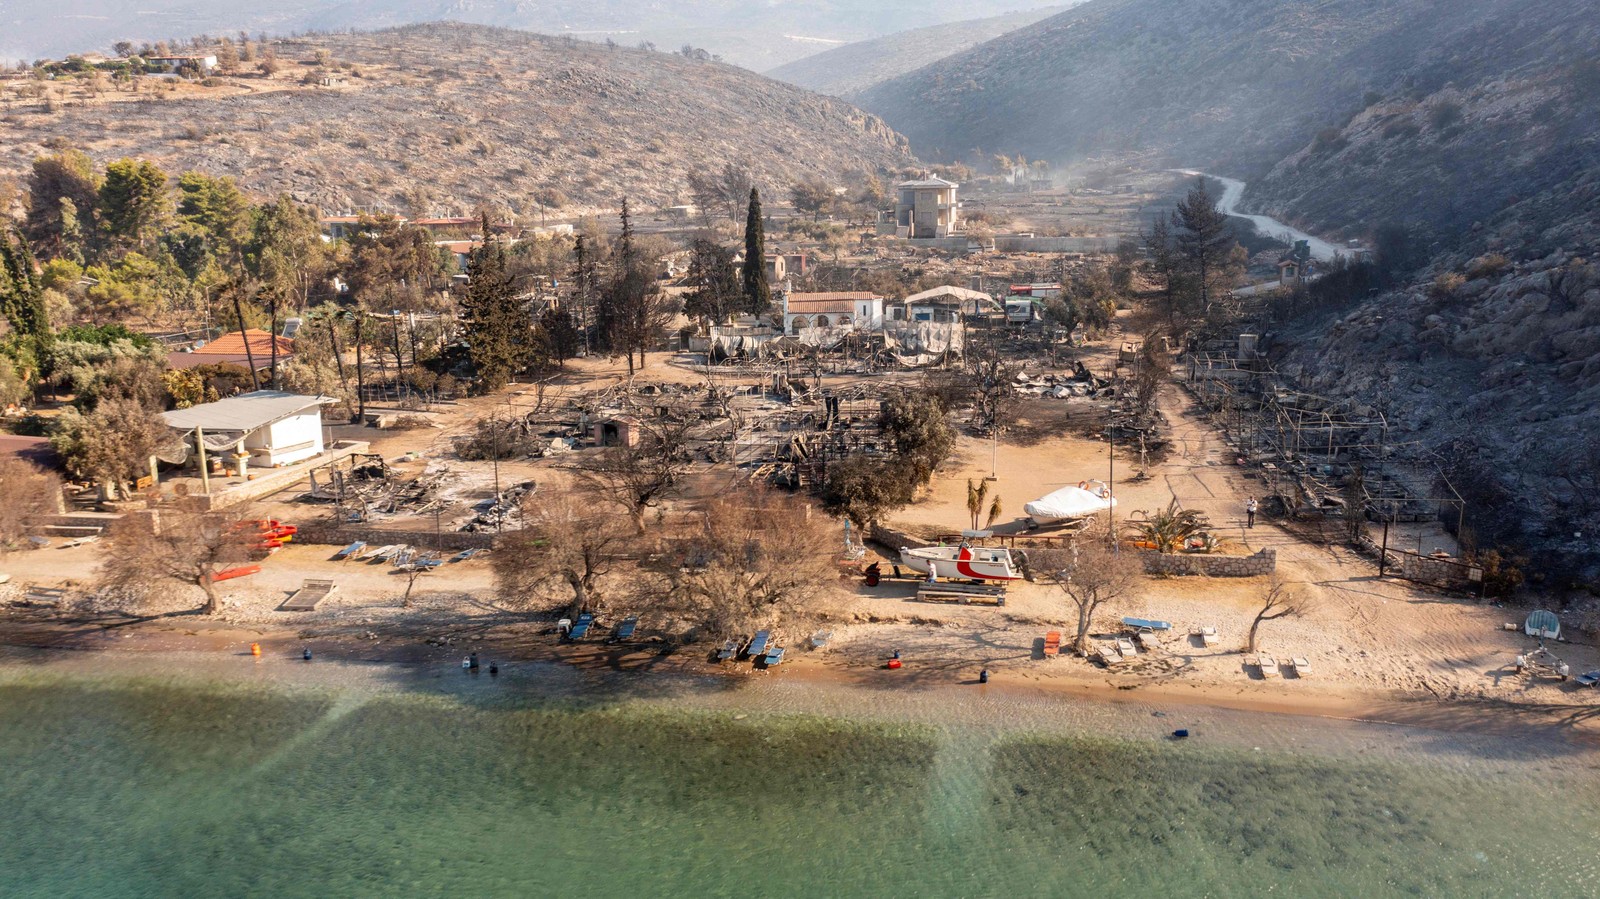 Acampamento destruído após um incêndio florestal perto de Prodromos, 100 km a sudoeste de Atenas — Foto: Spyros BAKALIS / AFP